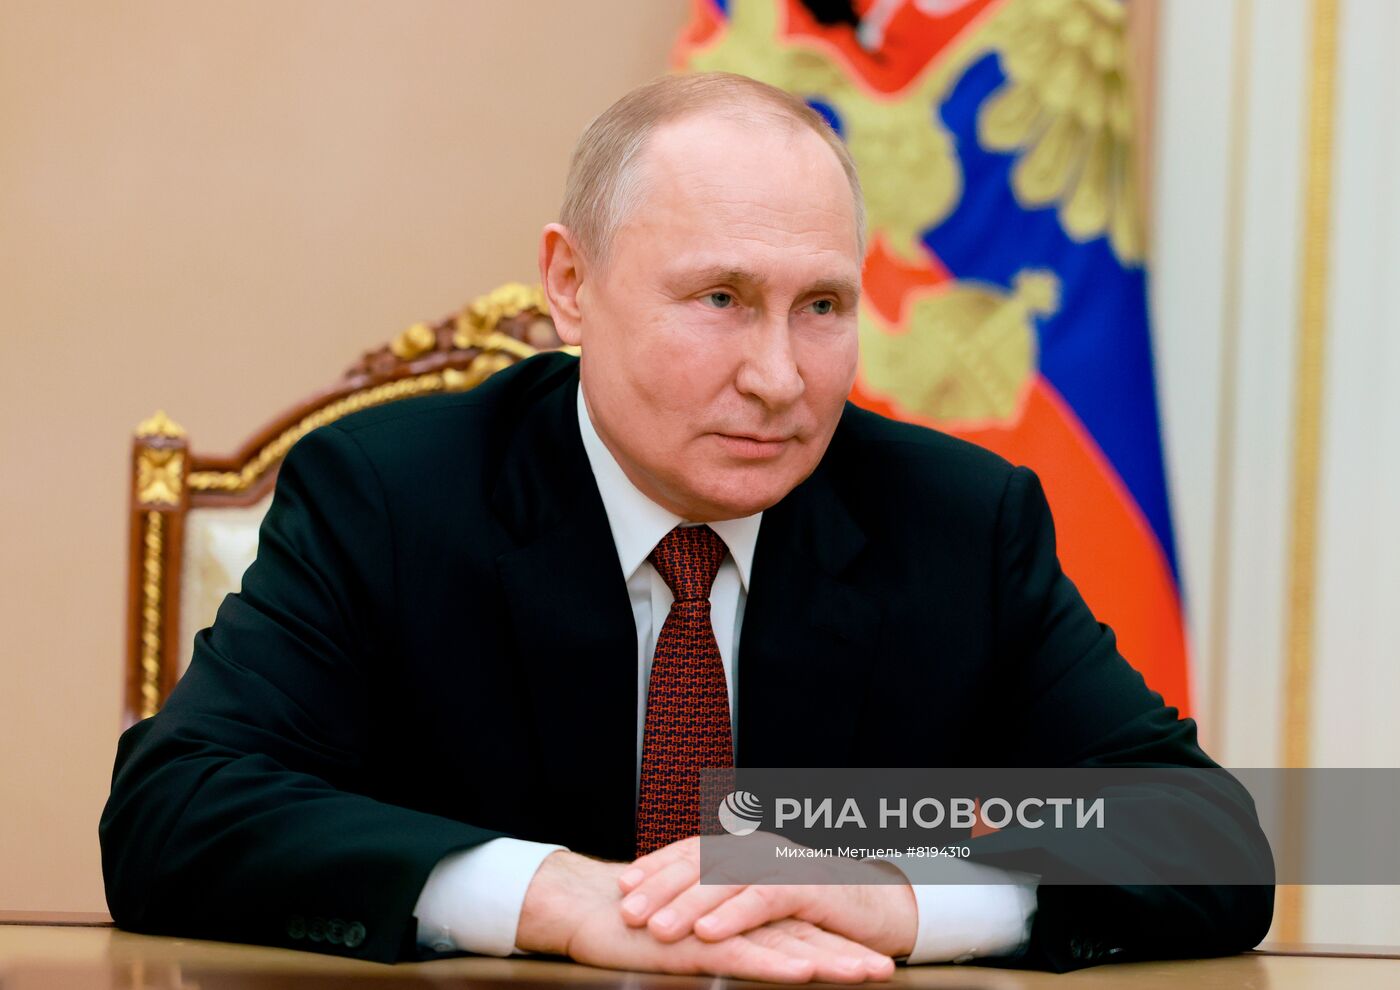 Президент РФ В. Путин обратился с видеоприветствием к участникам фестиваля "Российская студенческая весна"